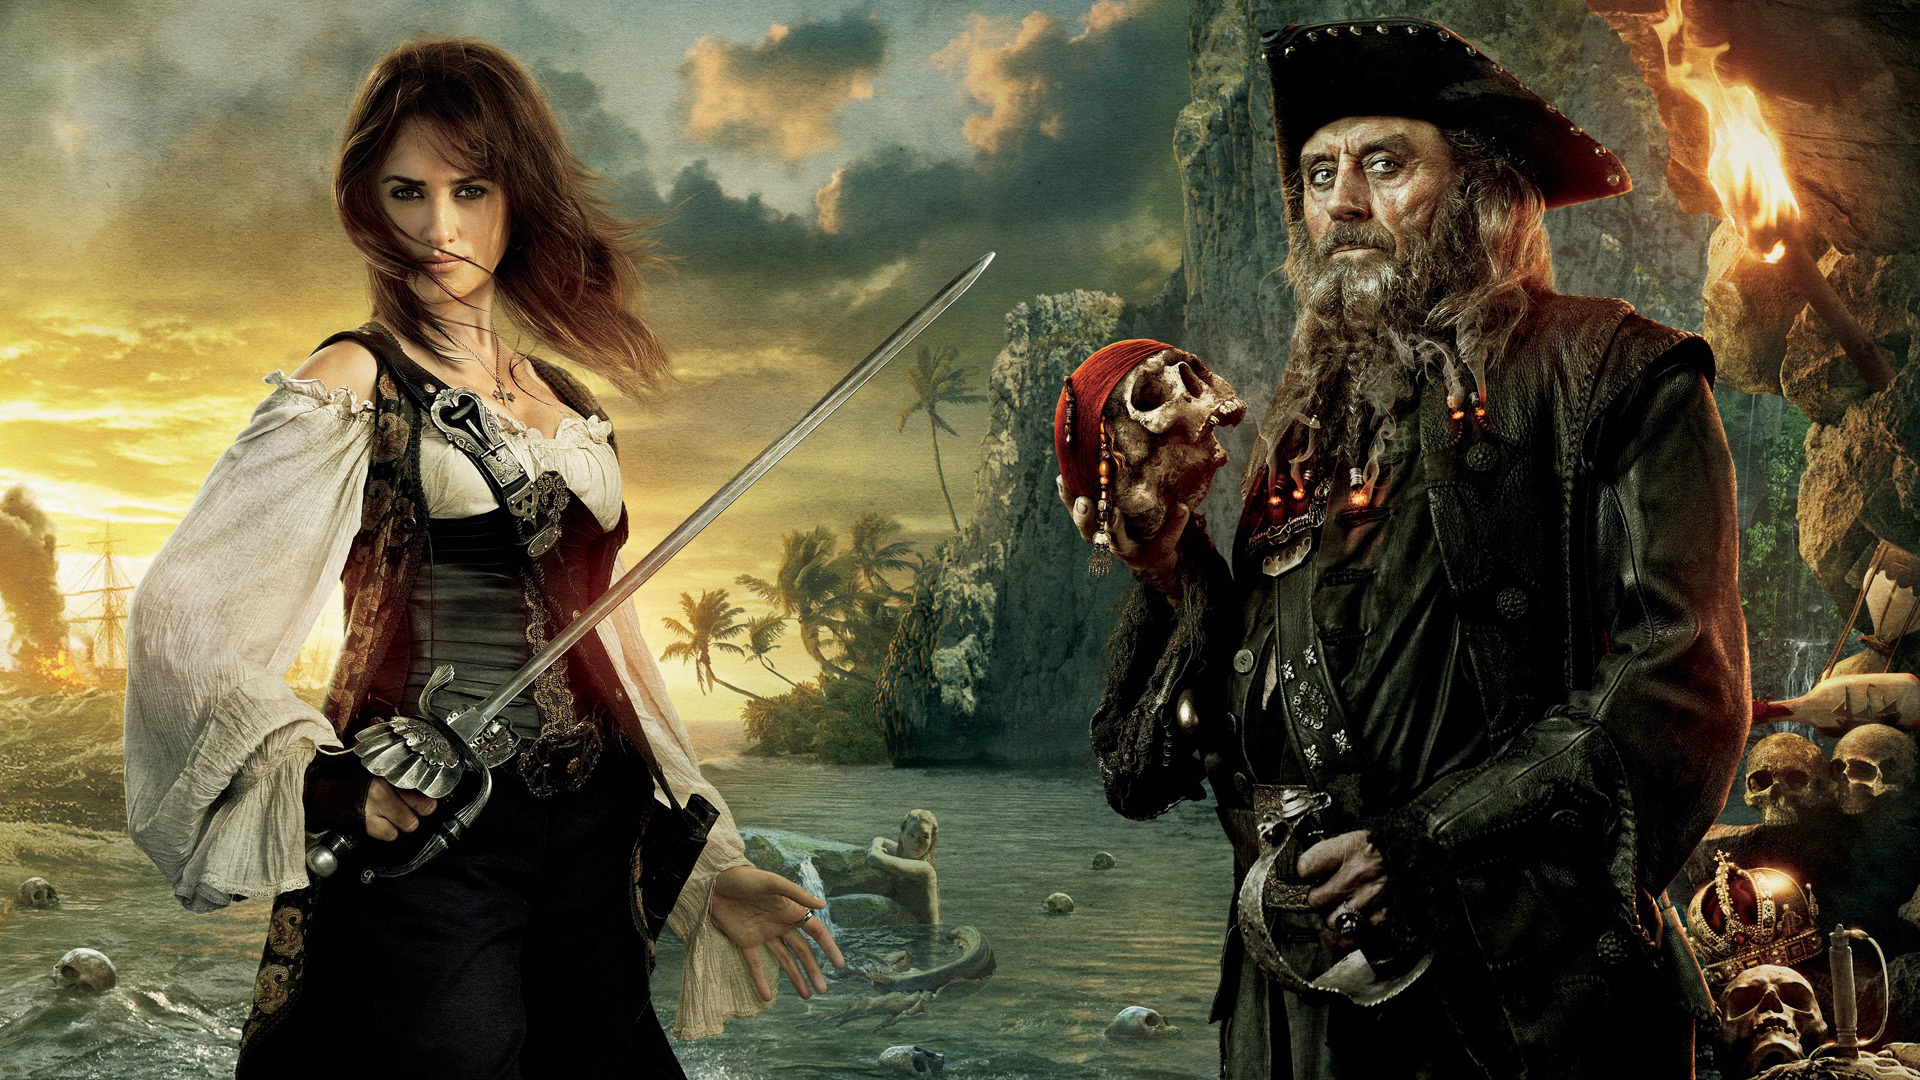 Ian McShane, Pirates of the Caribbean, Penelope Cruz, Blackbeard, 1920x1080 Full HD Desktop